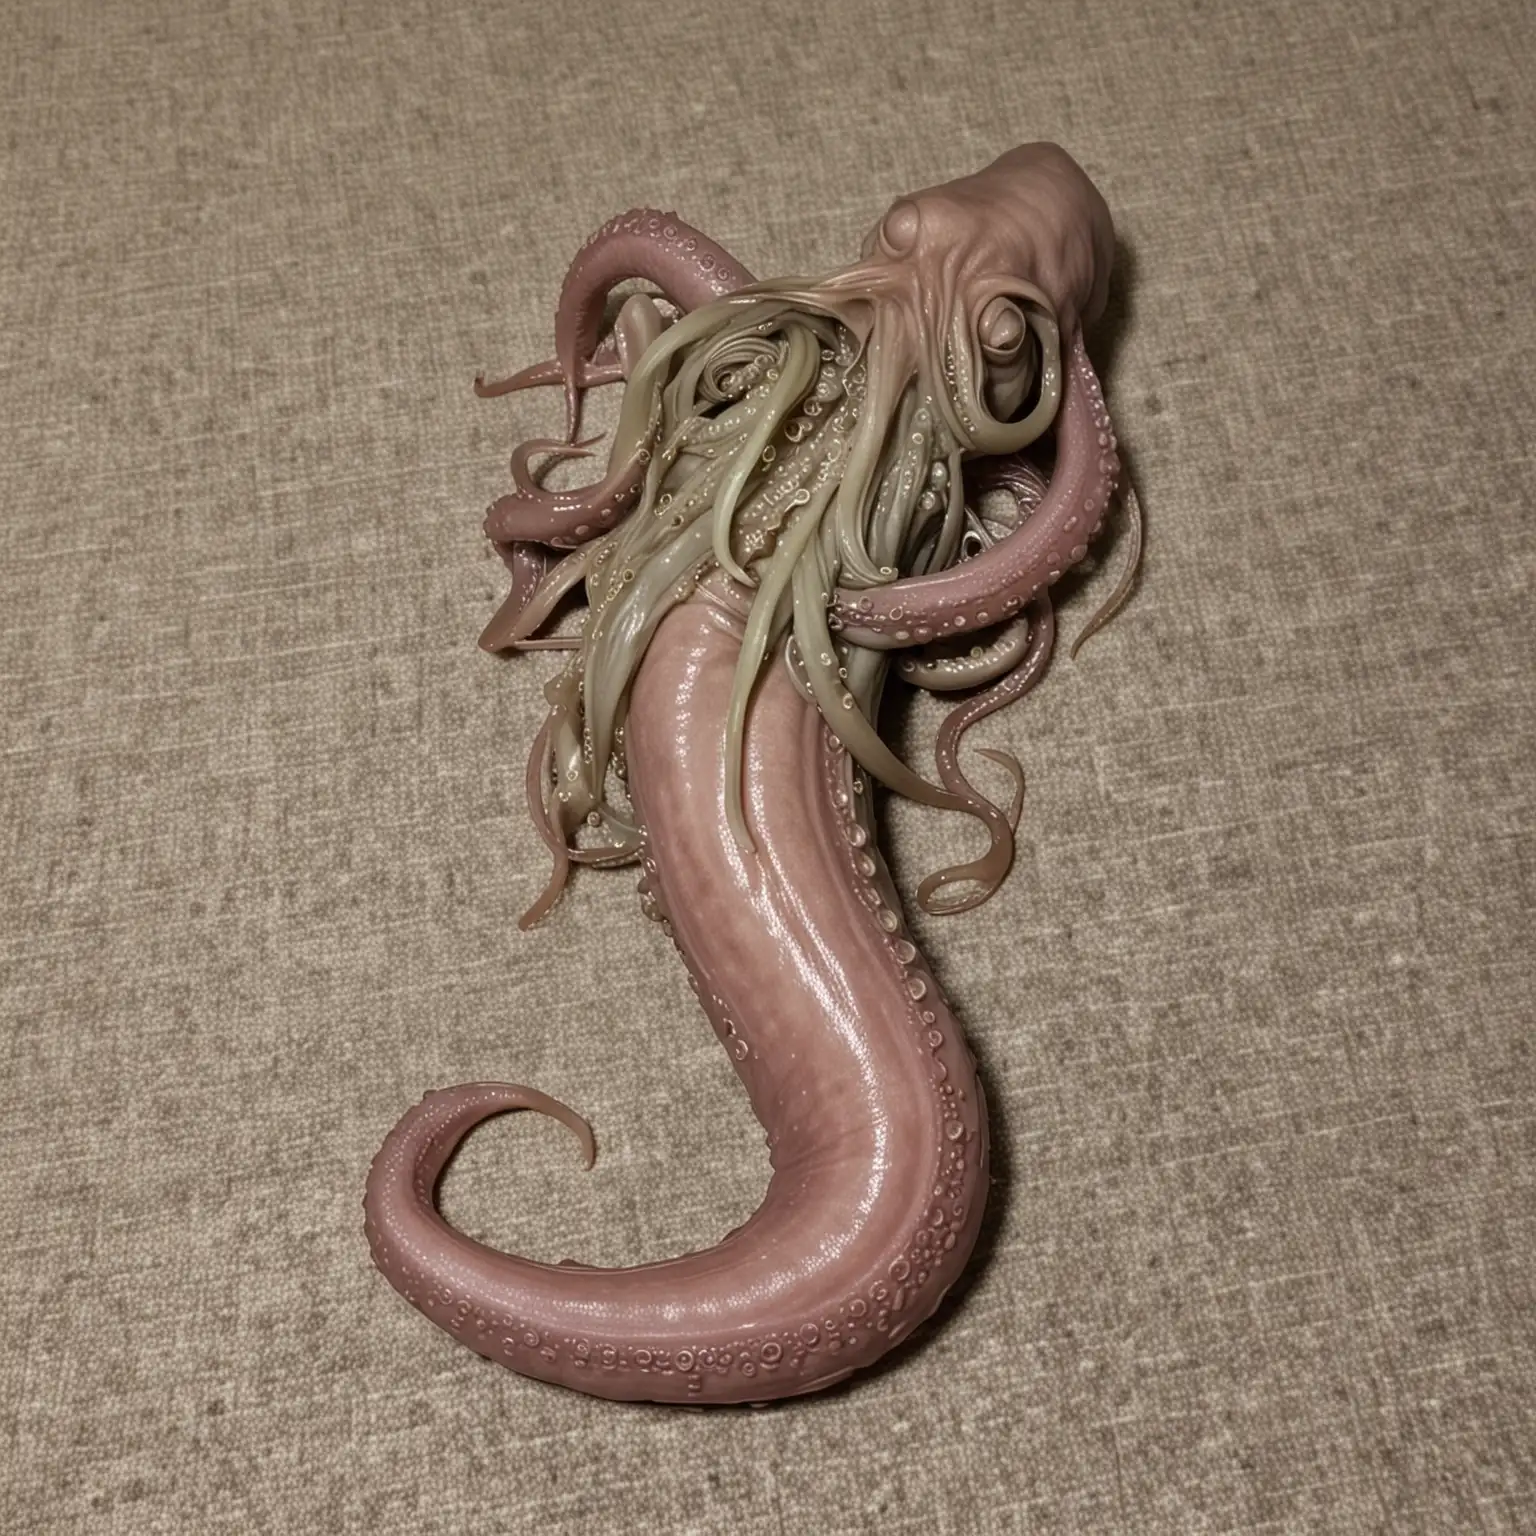 sleepy folded tentacle alien penis